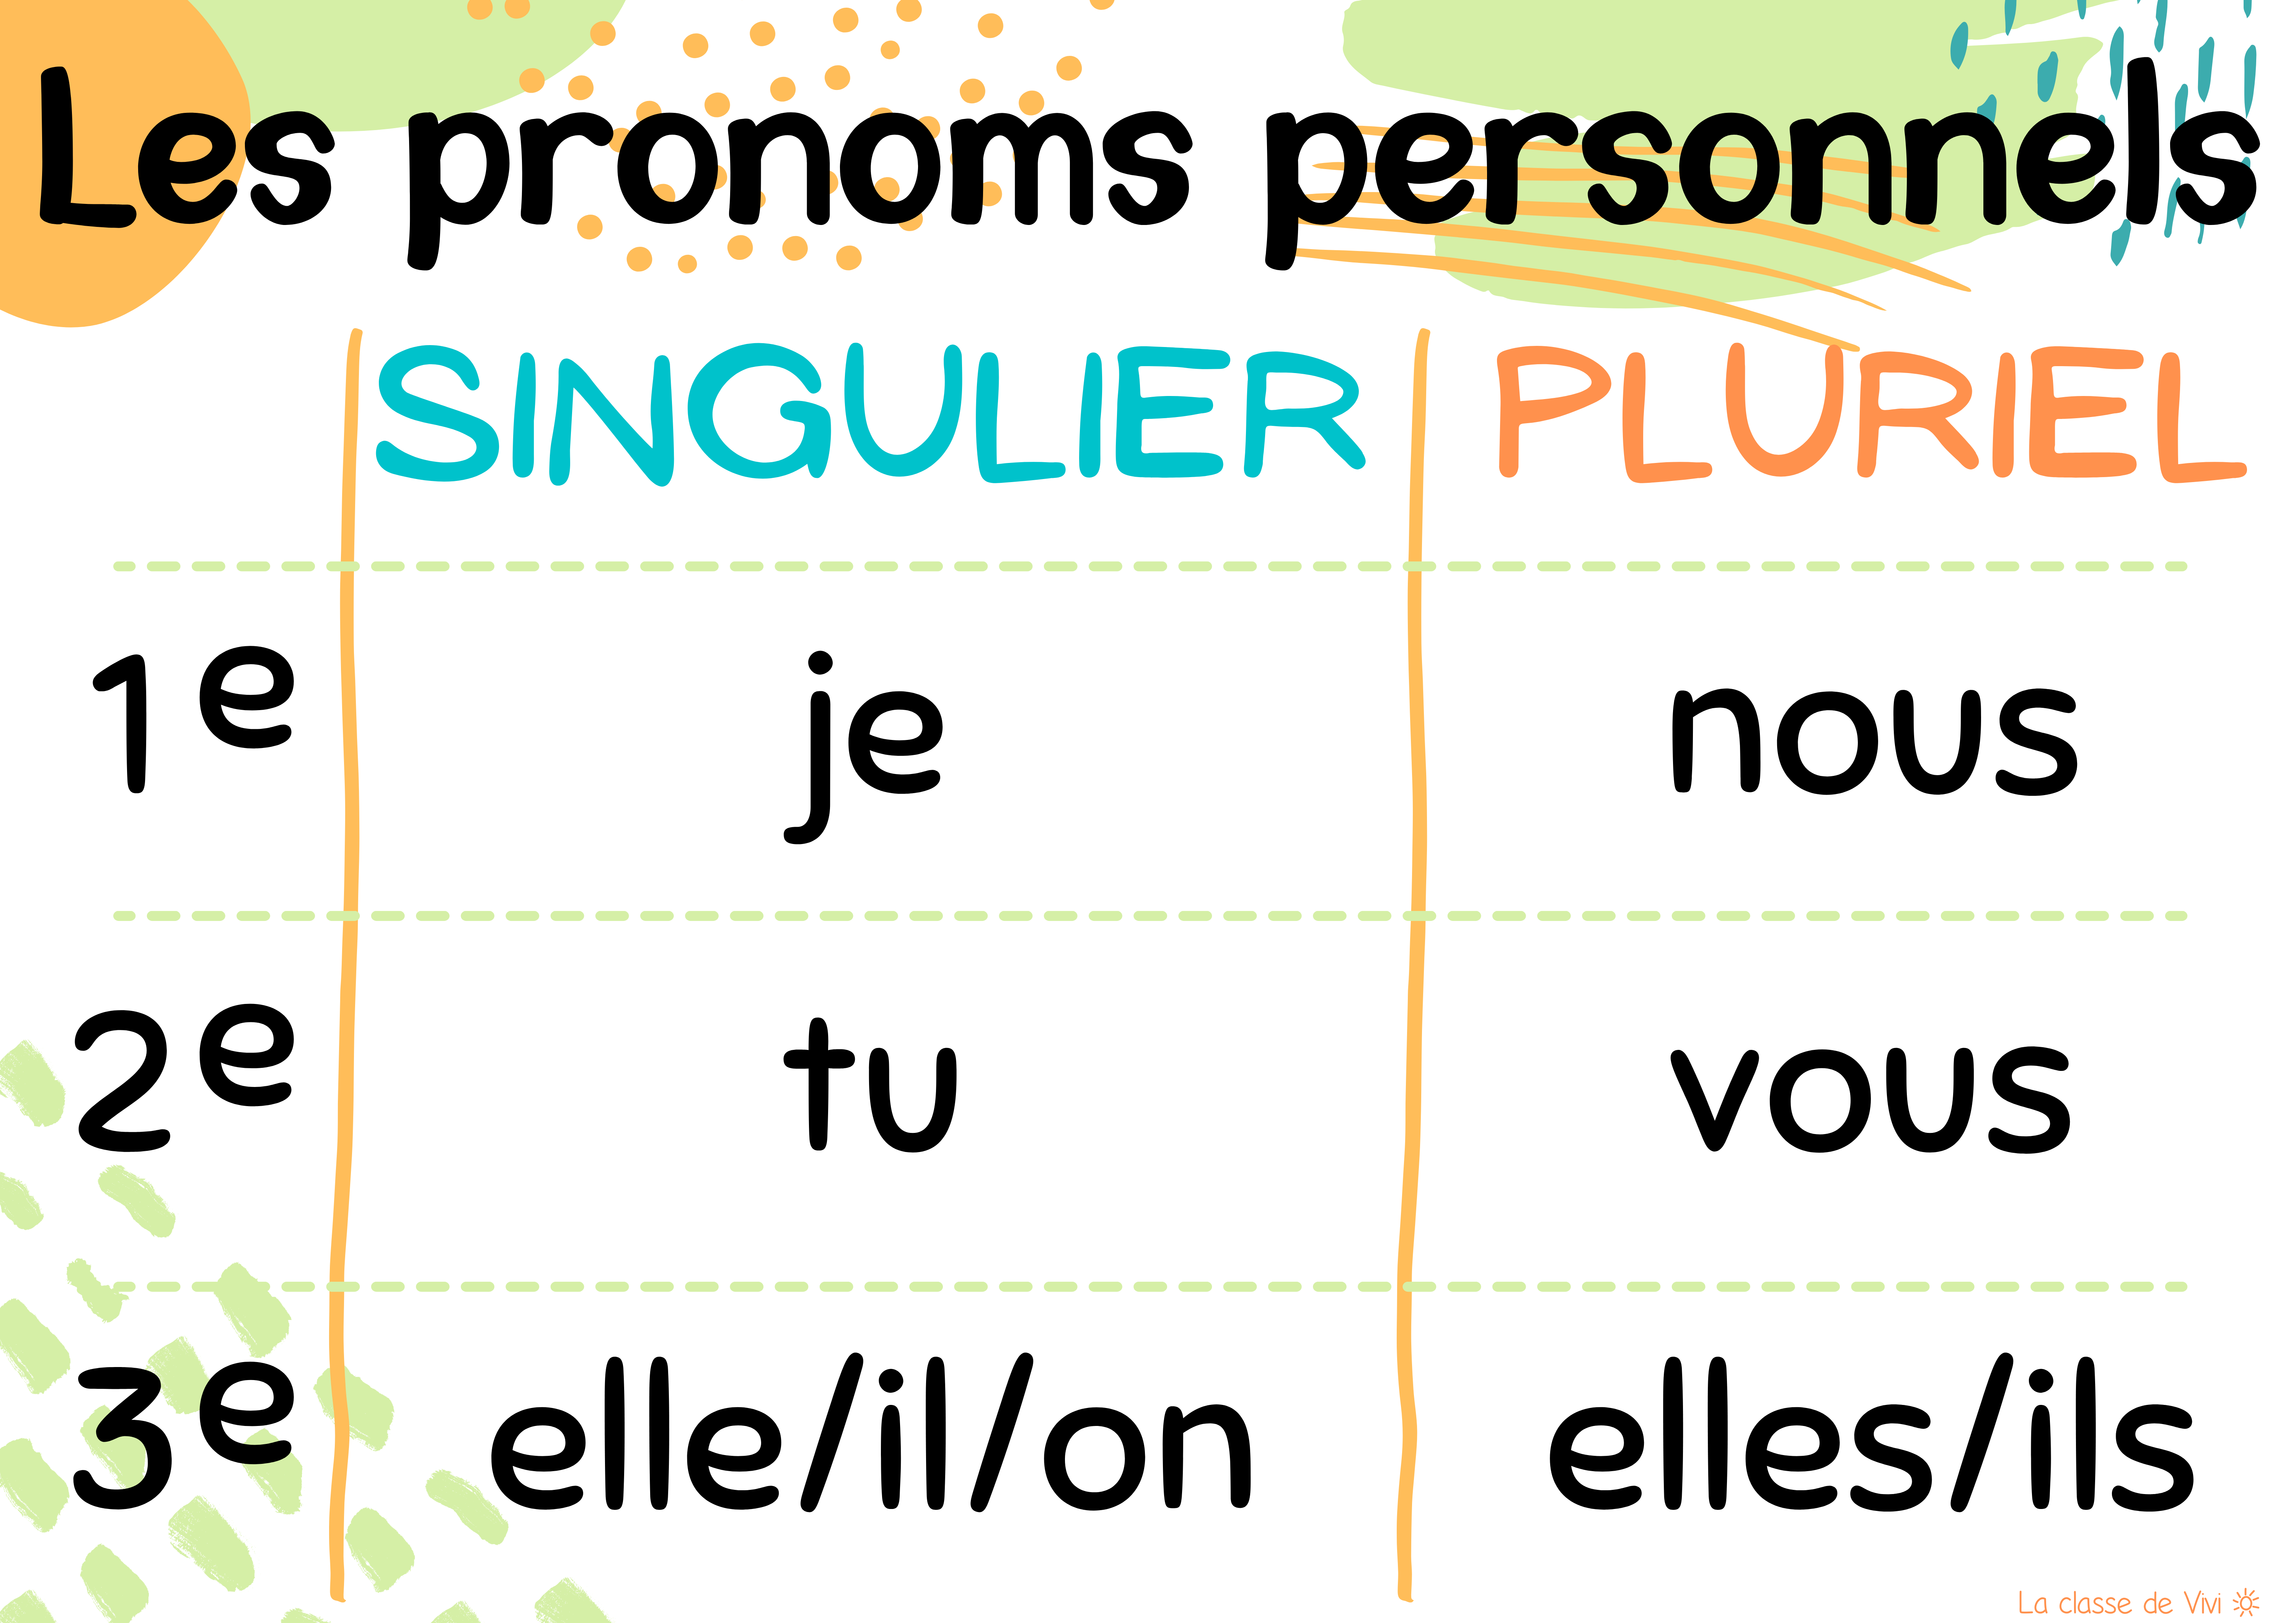 Tableau Des Pronoms Personnels Pronom Personnel Liste Des Pronoms Hot